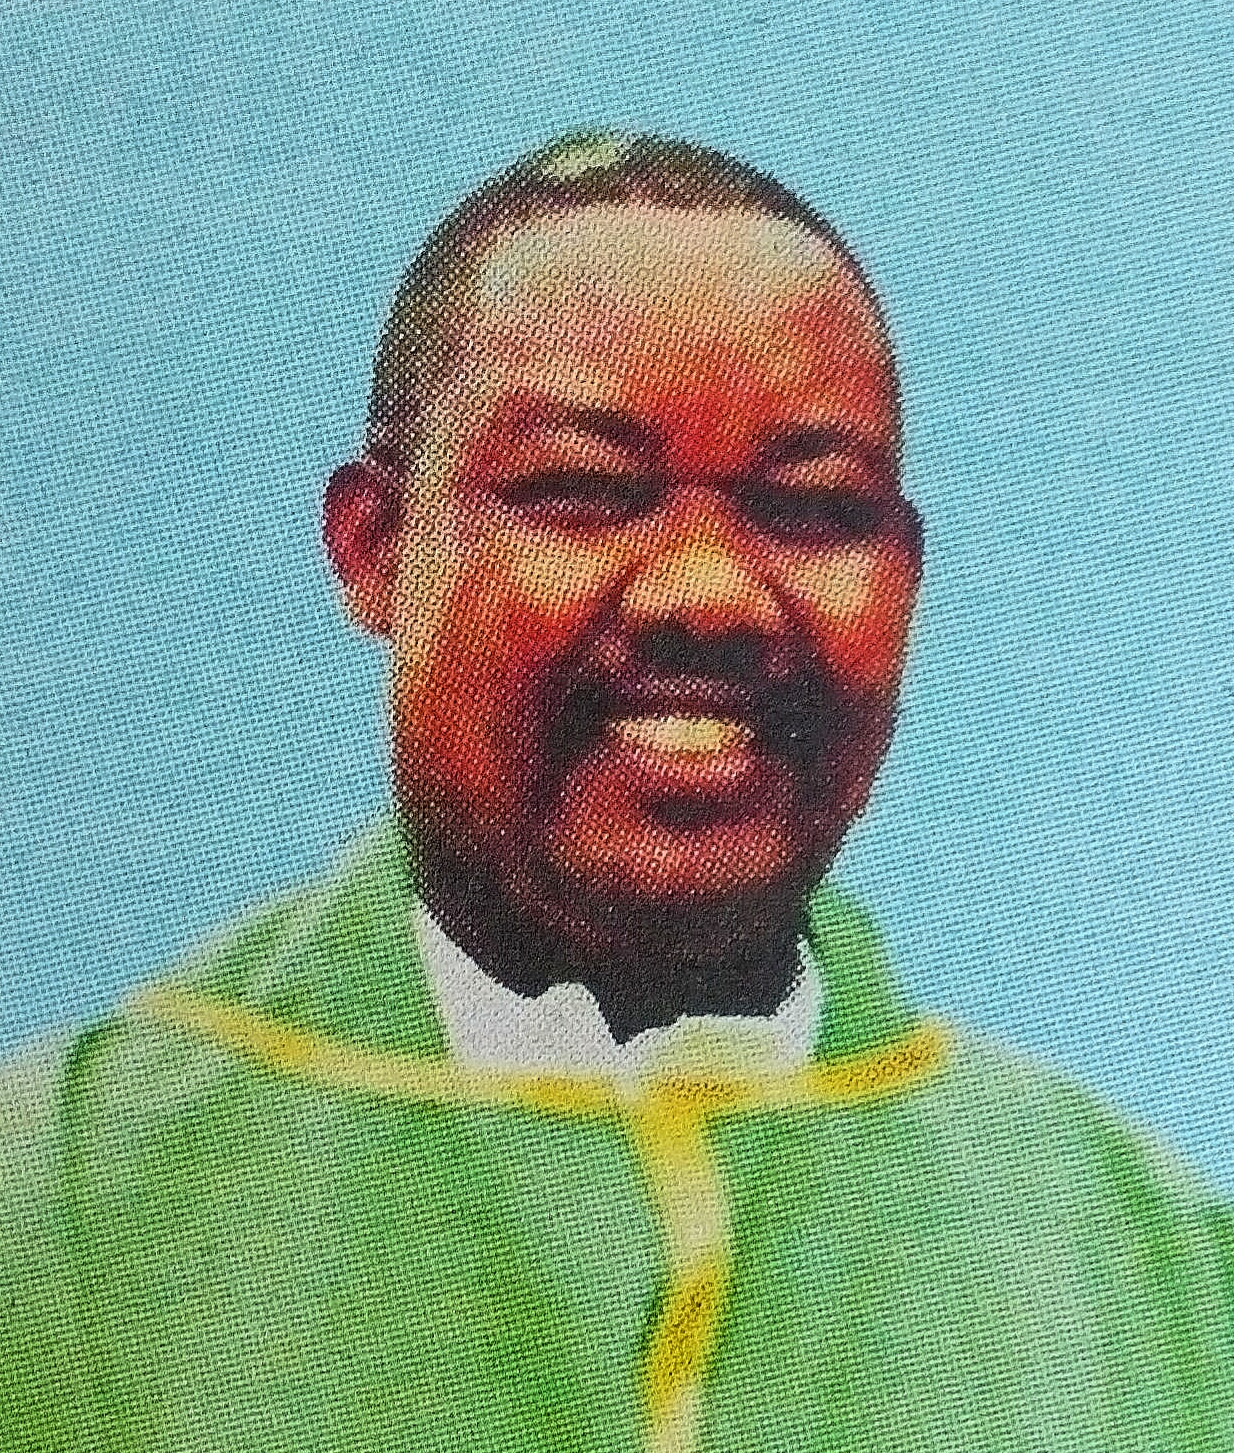 Obituary Image of Fr. Justus Mainga Ndundya